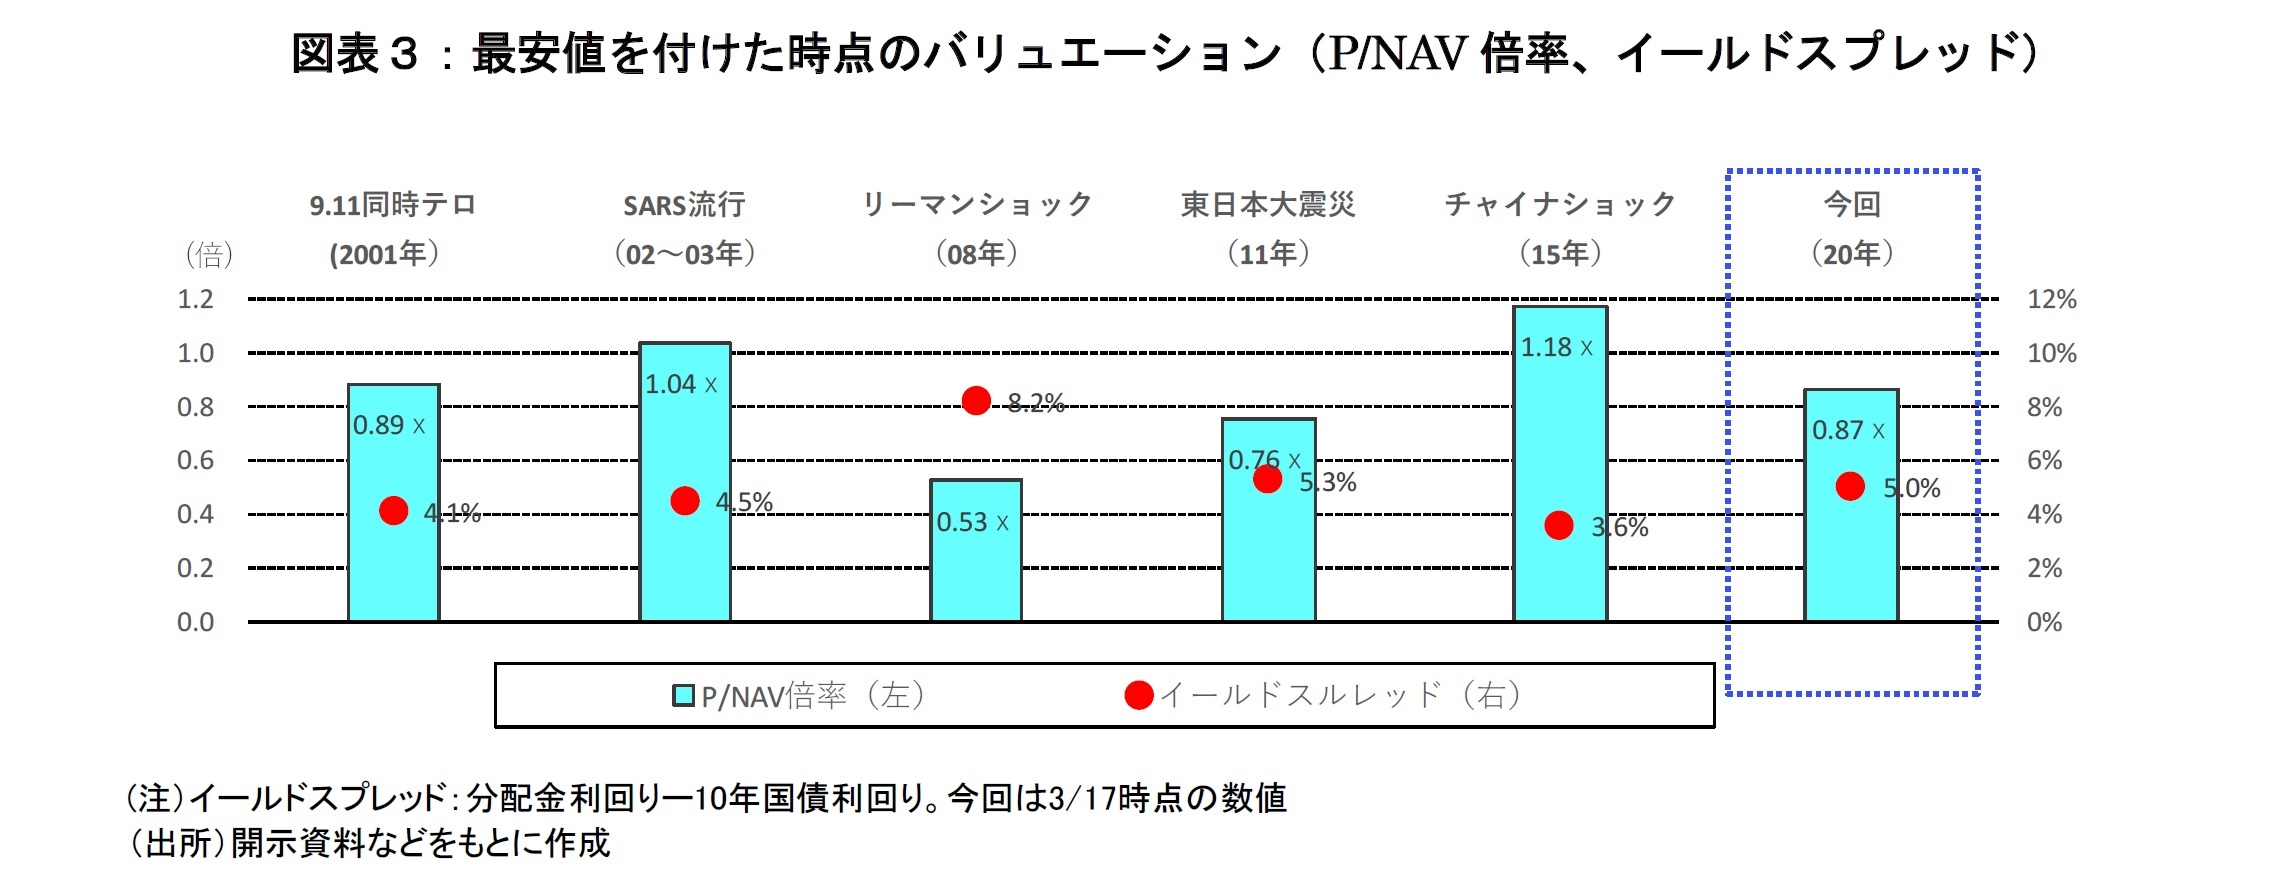 図表３：最安値を付けた時点のバリュエーション（P/NAV倍率、イールドスプレッド）